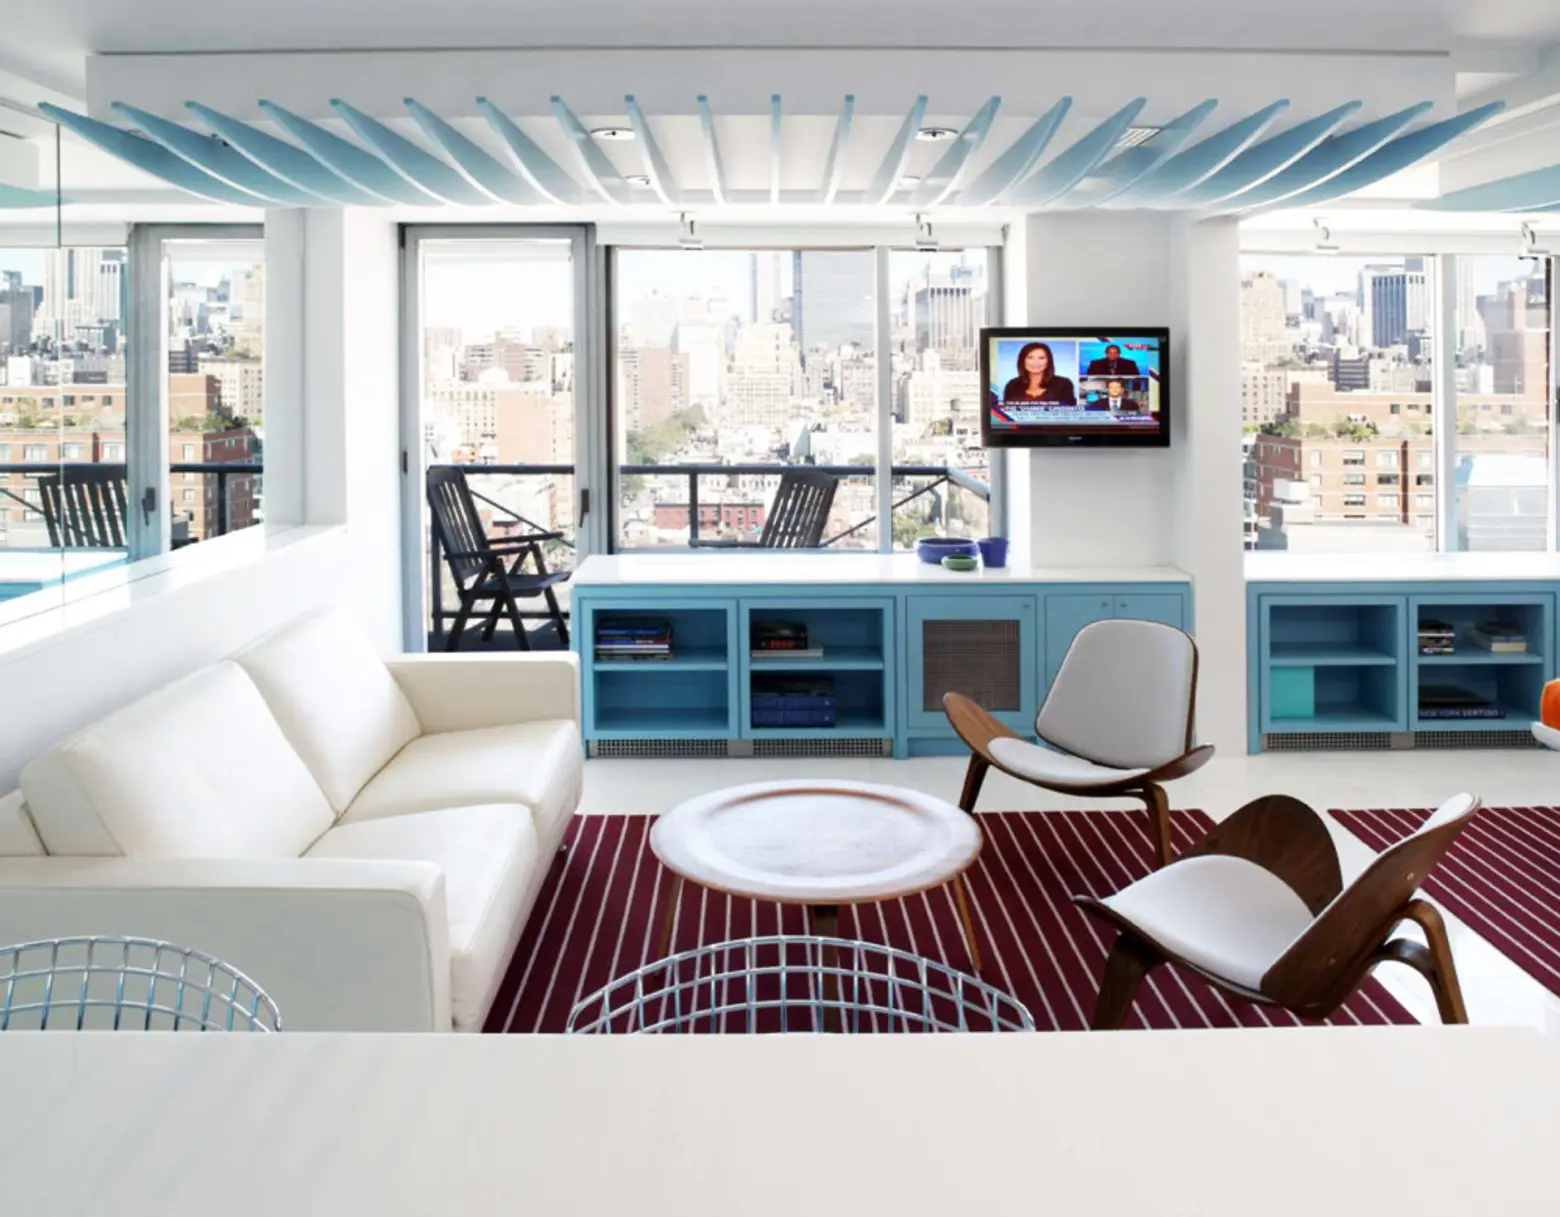 Michael Rubin Architects, chelsea pied a terre, chelsea interior design, mirrors in interior design